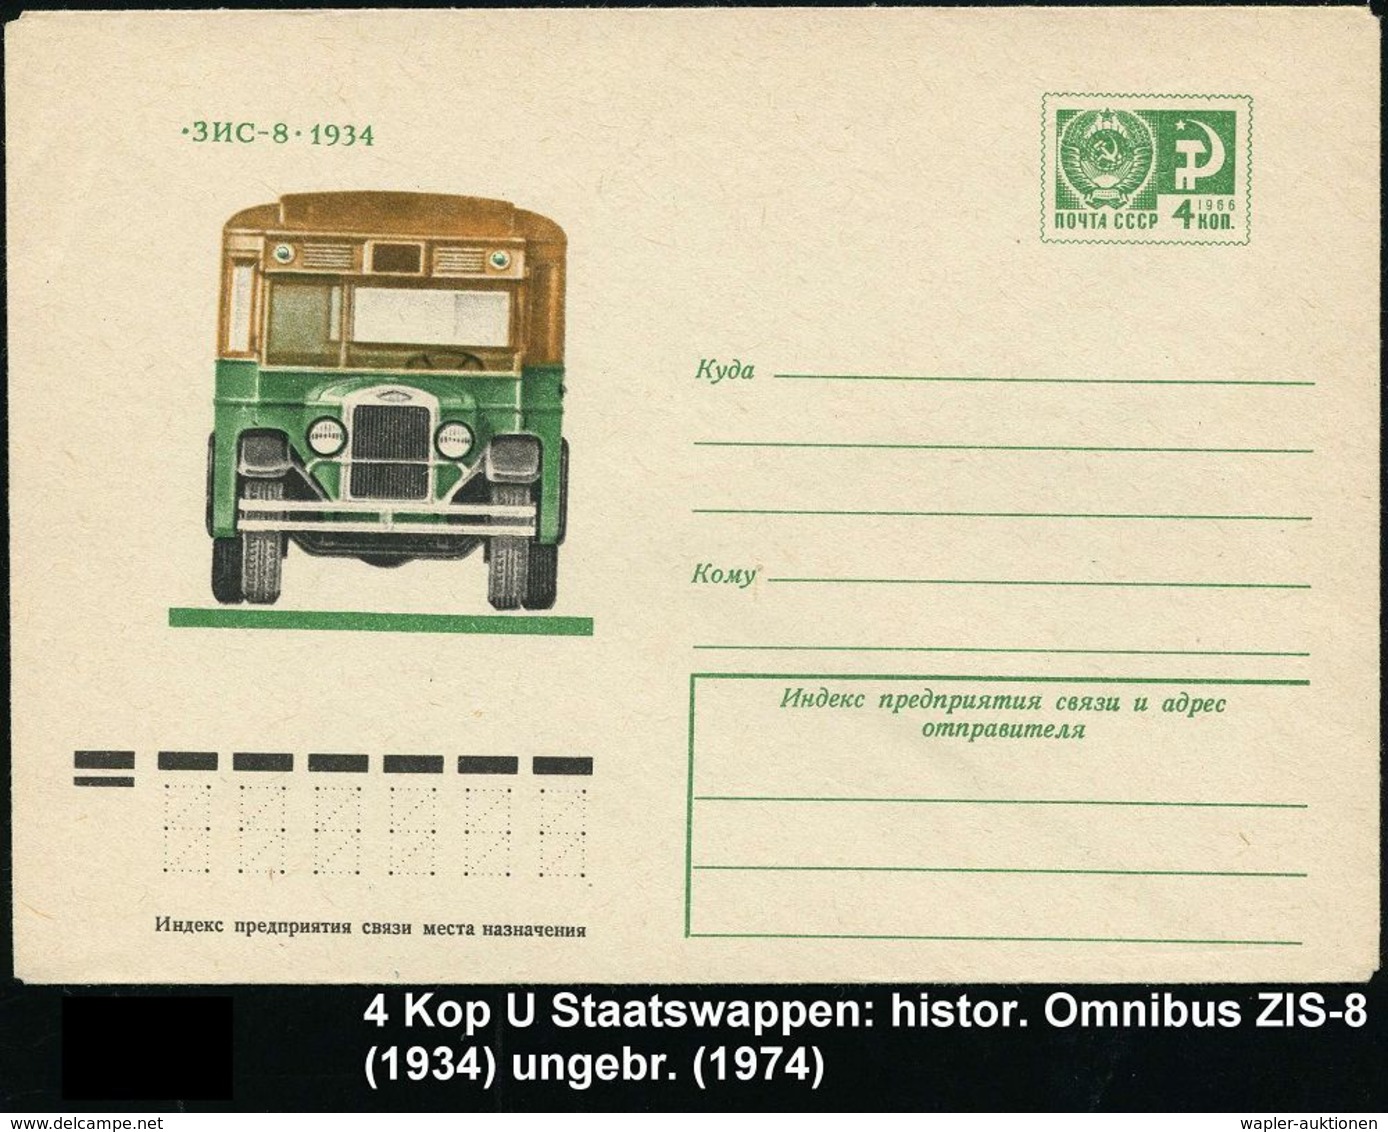 OMNIBUS / OMNIBUS-HERSTELLER : UdSSR 1974 4 Kop. U. Staatswappen, Grün Omnibus "SIS-8" Von 1934, Ungebr. - Busses